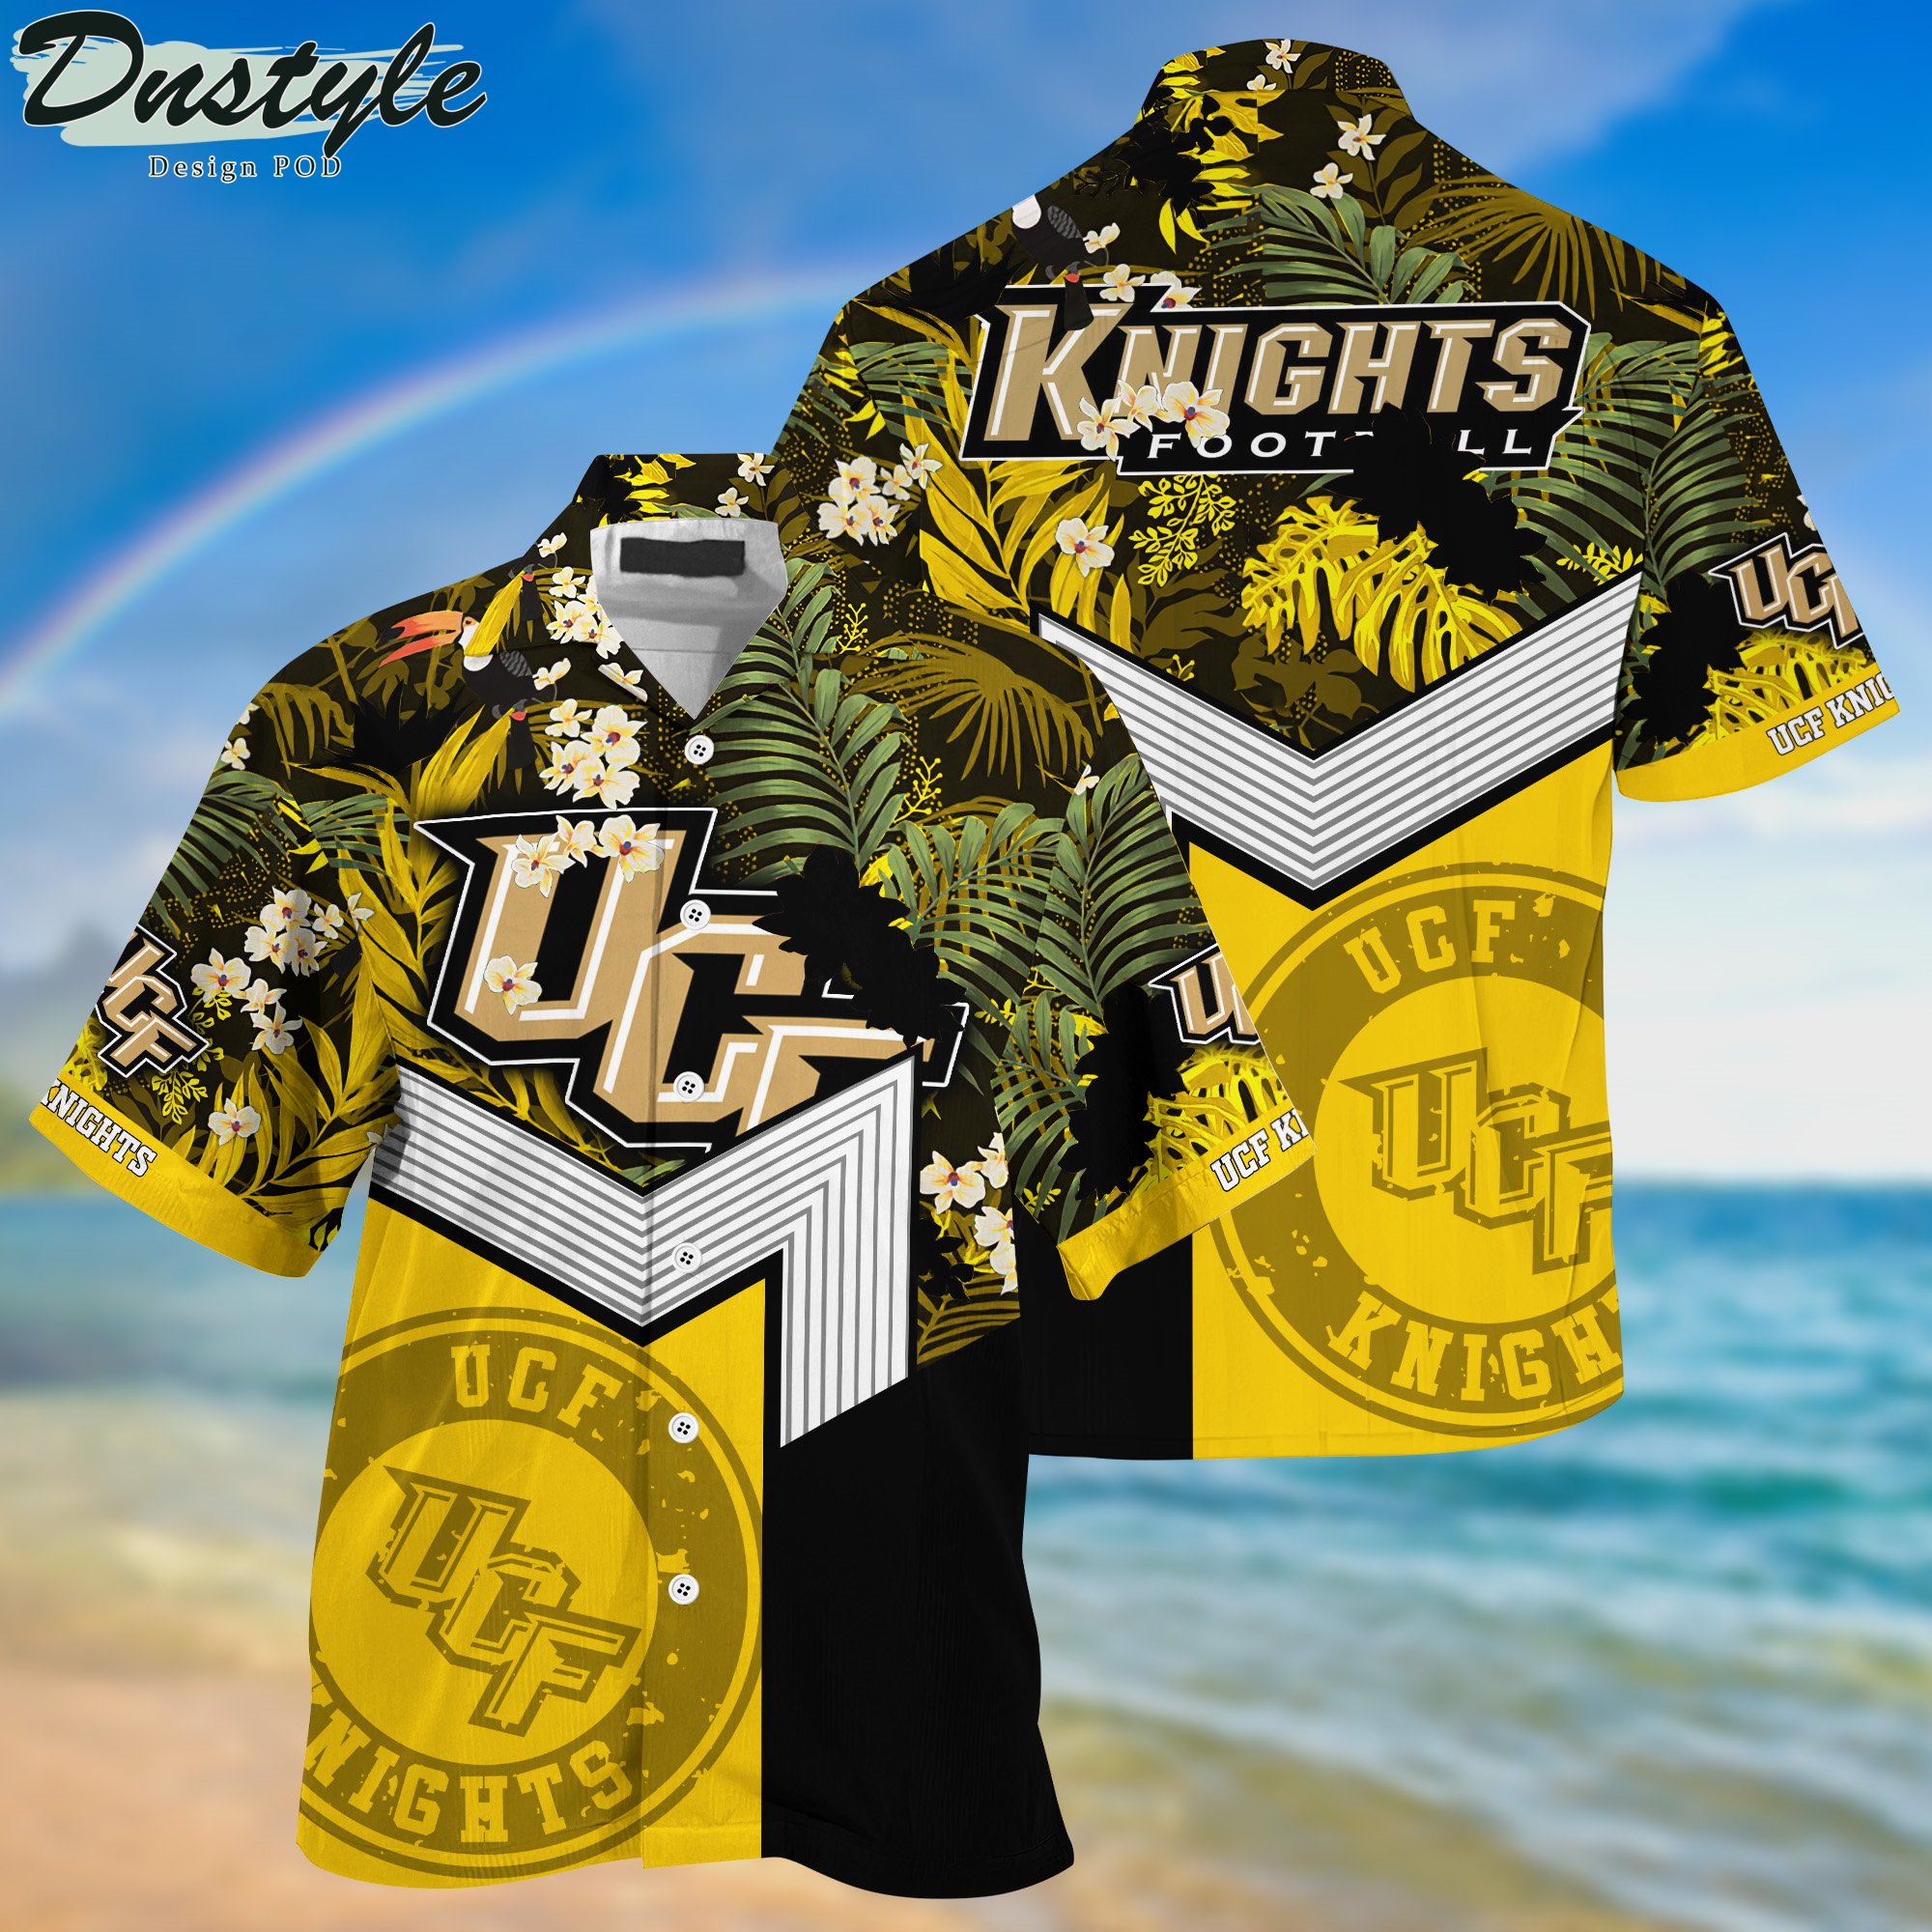 UCF Knights Hawaii Shirt And Shorts New Collection